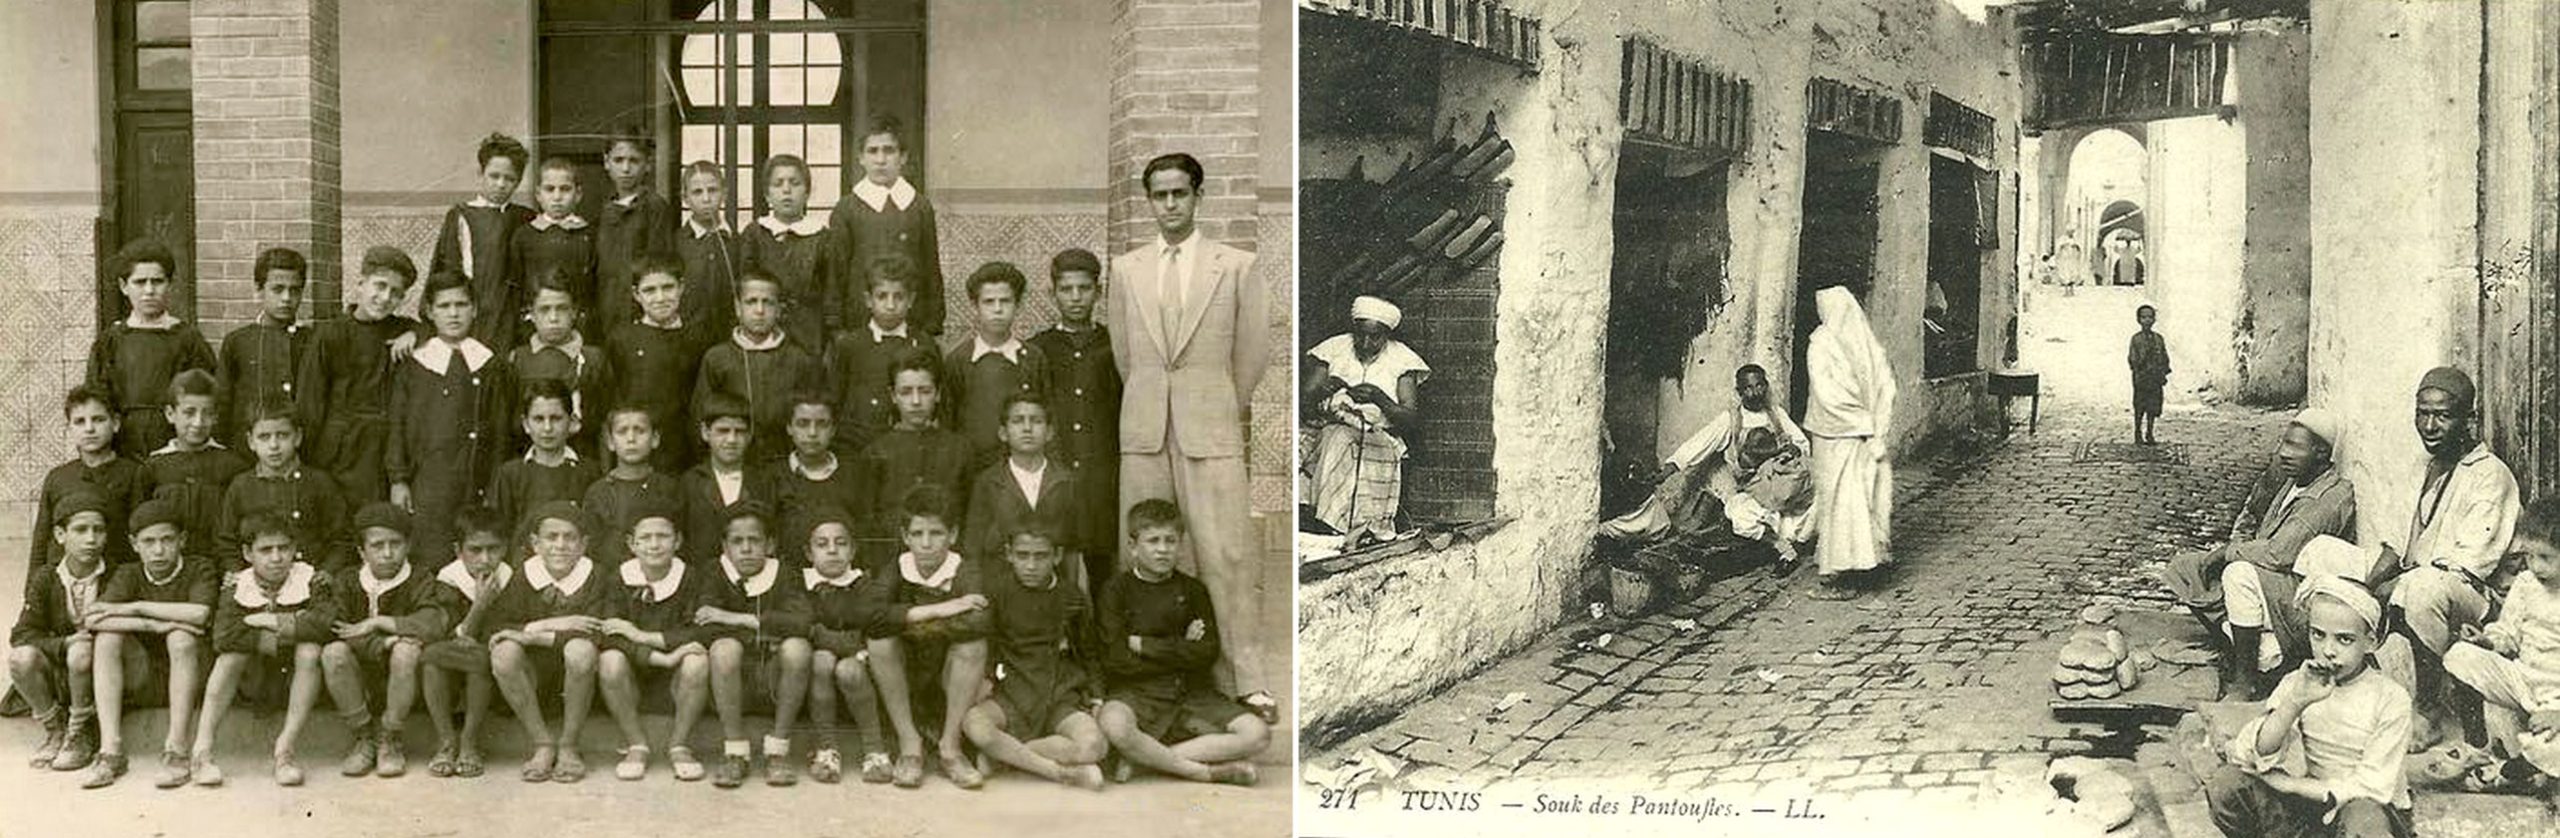 En 1935, Anouar apprenait-il l'histoire de France dans une école de Tunis… ou était-il un enfant des souks ? <br><br>